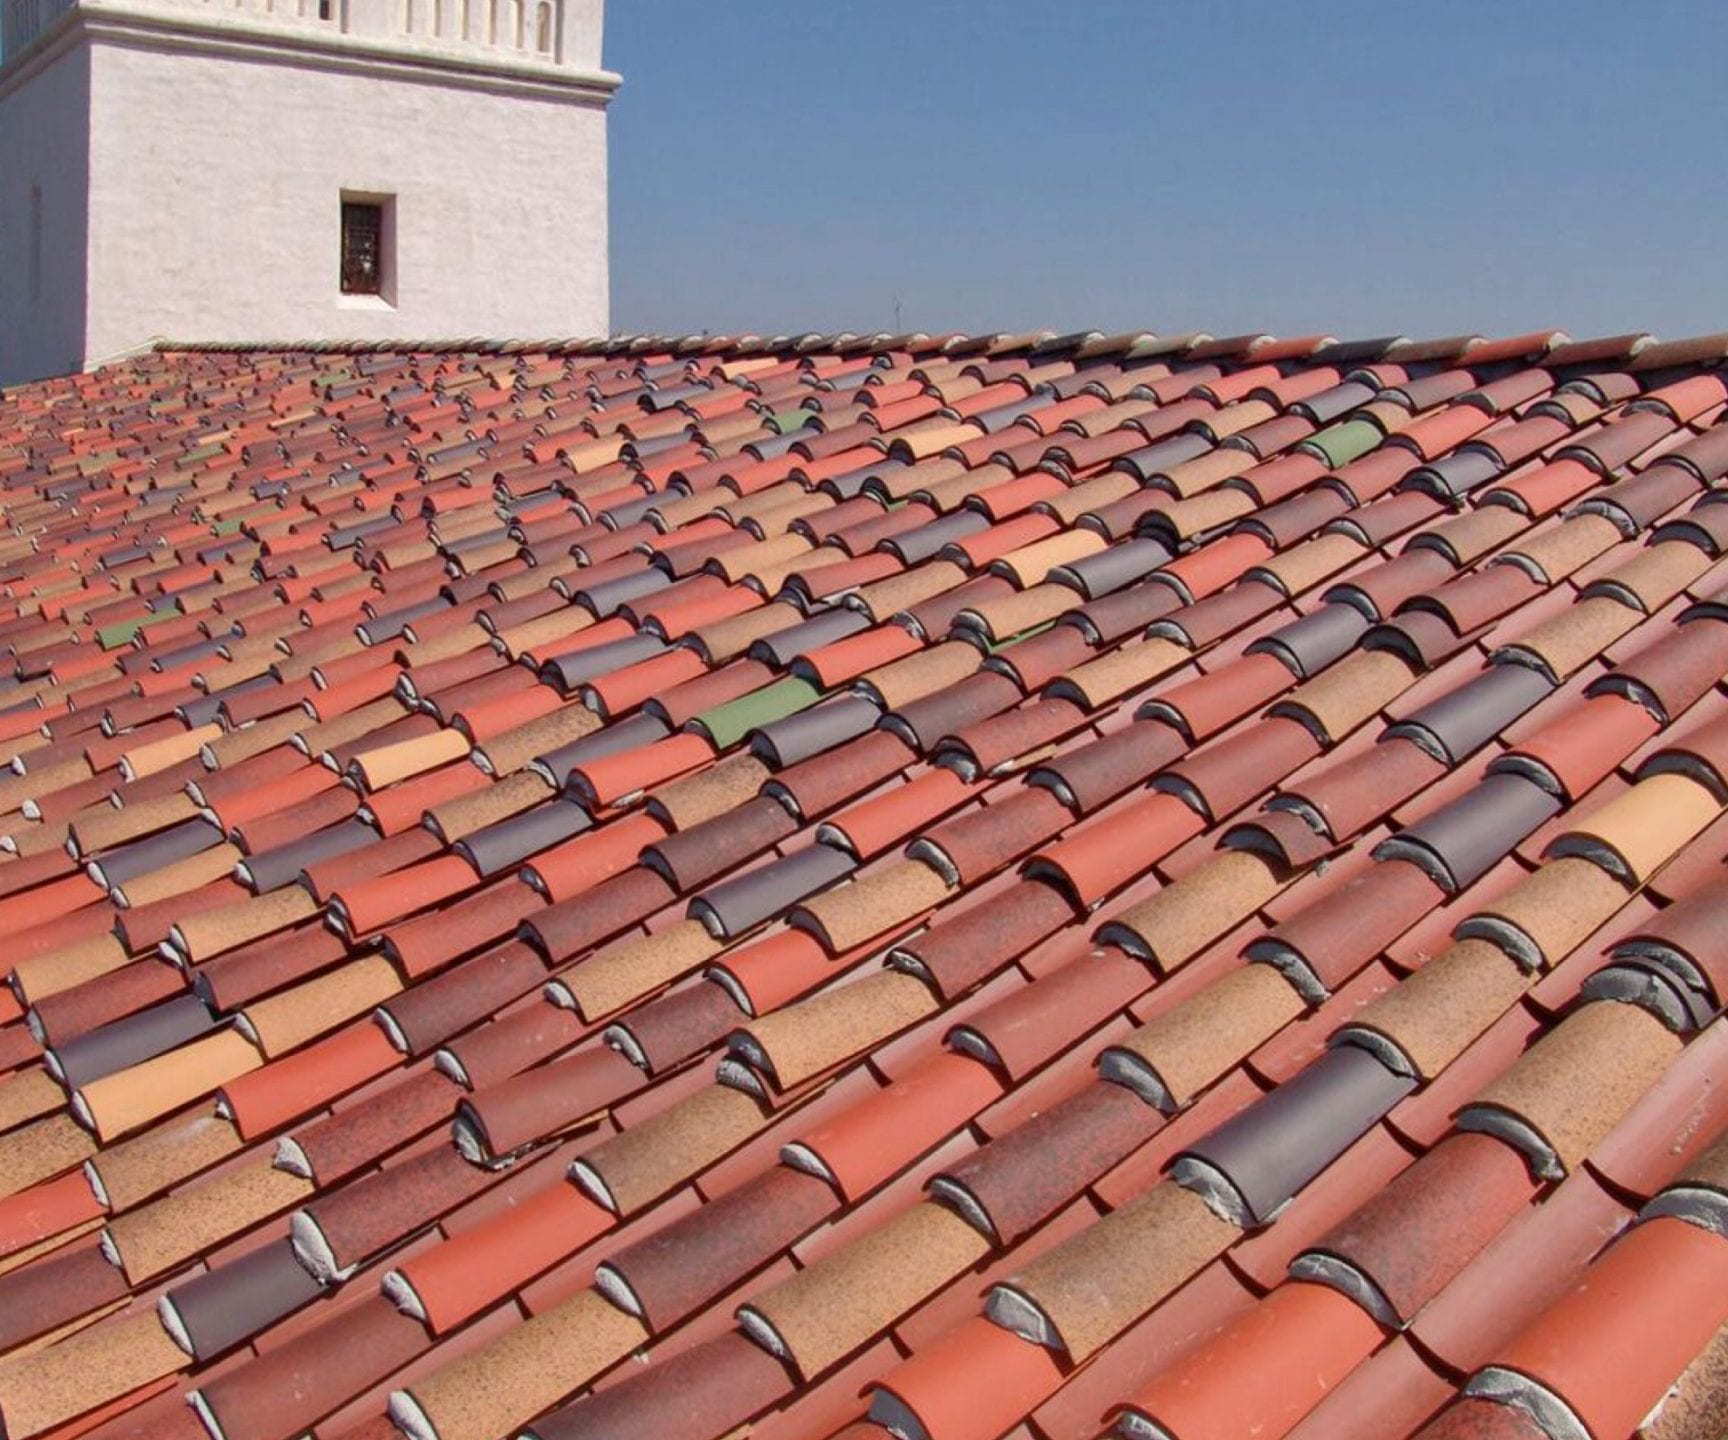 How Long Should A Concrete Tile Roof Last?